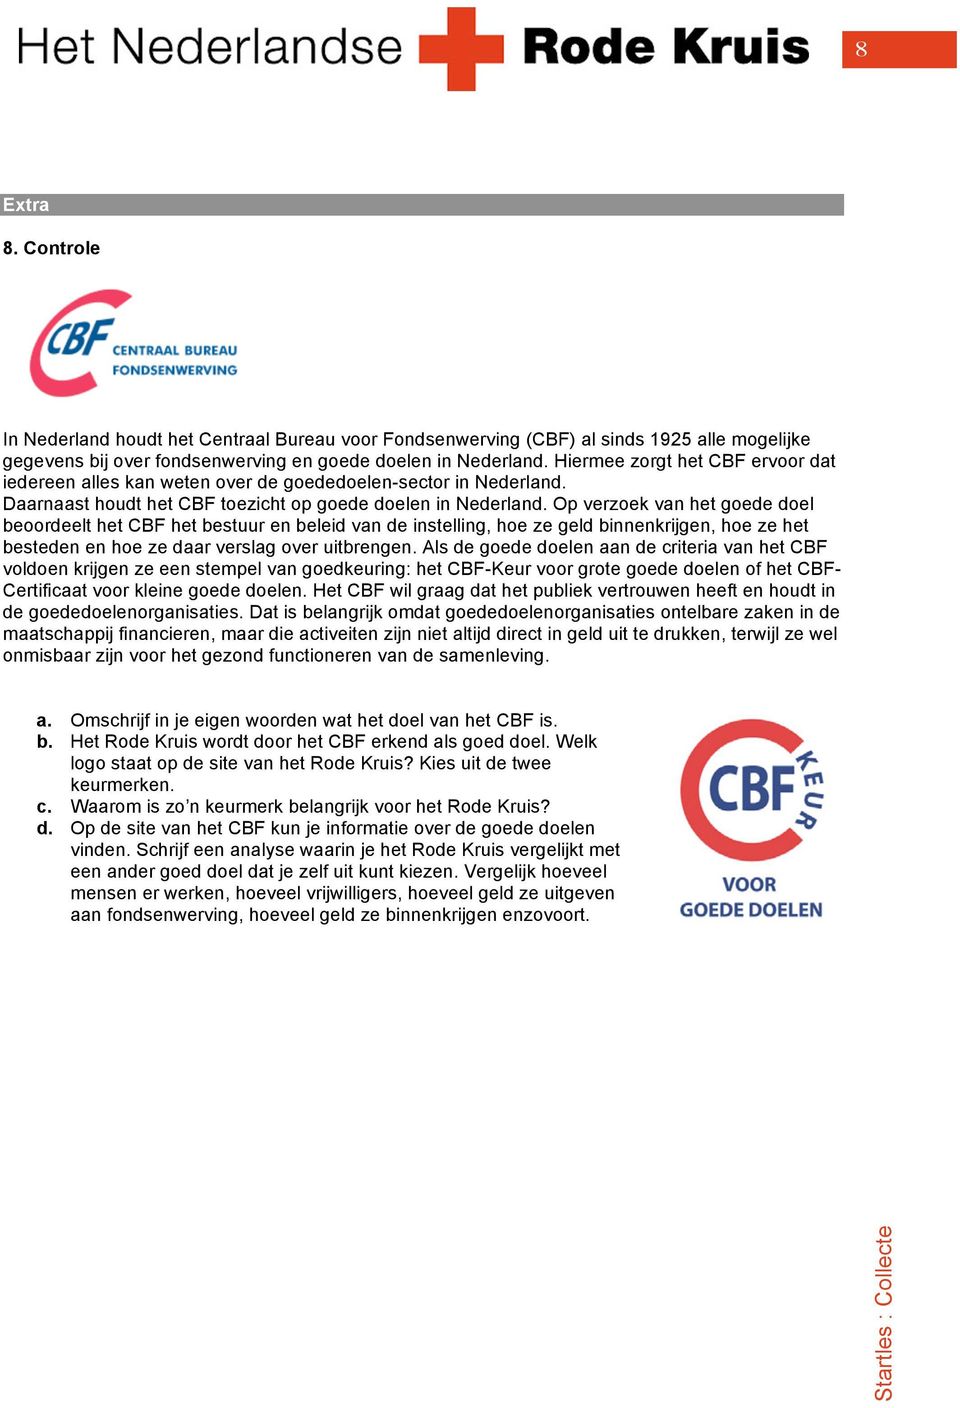 Op verzoek van het goede doel beoordeelt het CBF het bestuur en beleid van de instelling, hoe ze geld binnenkrijgen, hoe ze het besteden en hoe ze daar verslag over uitbrengen.